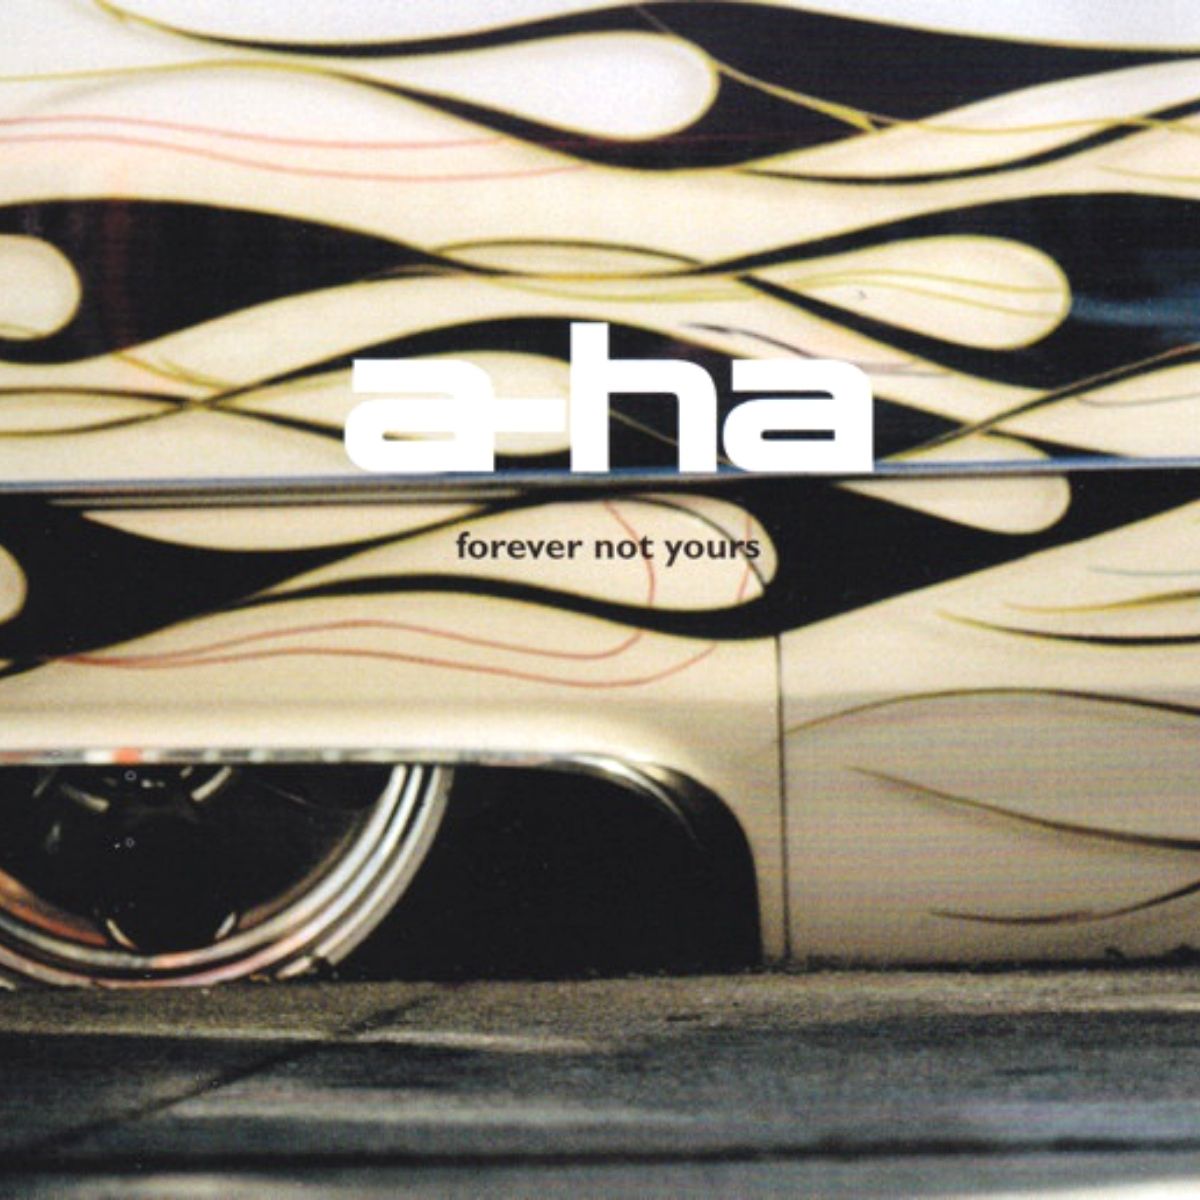 Couverture du single "Forever Not Yours" par A-ha